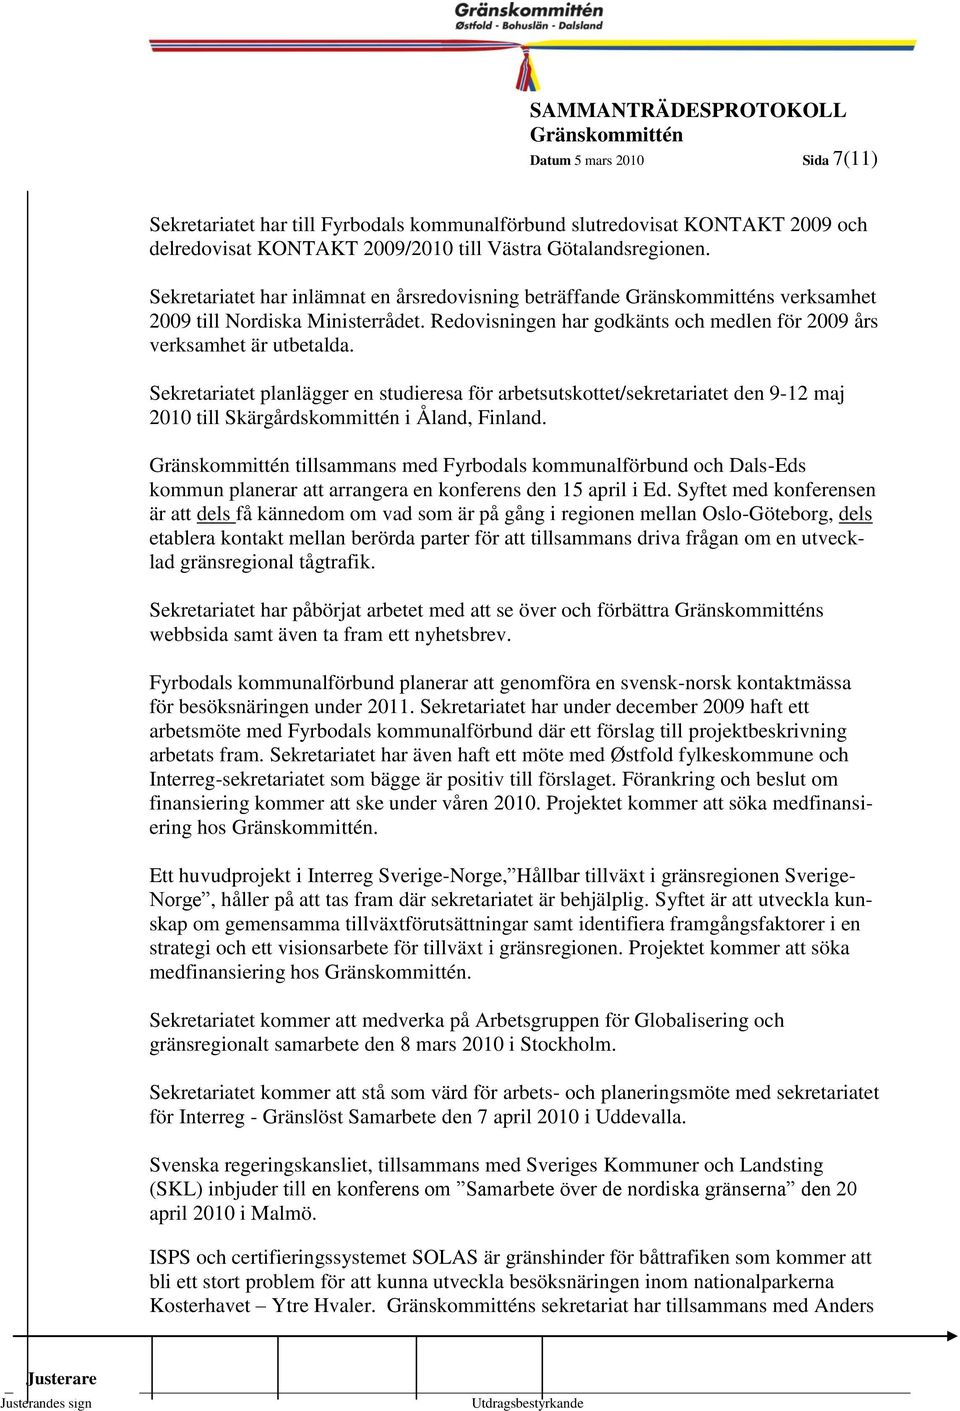 7 Sekretariatet planlägger en studieresa för arbetsutskottet/sekretariatet den 9-12 maj 2010 till Skärgårdskommittén i Åland, Finland.